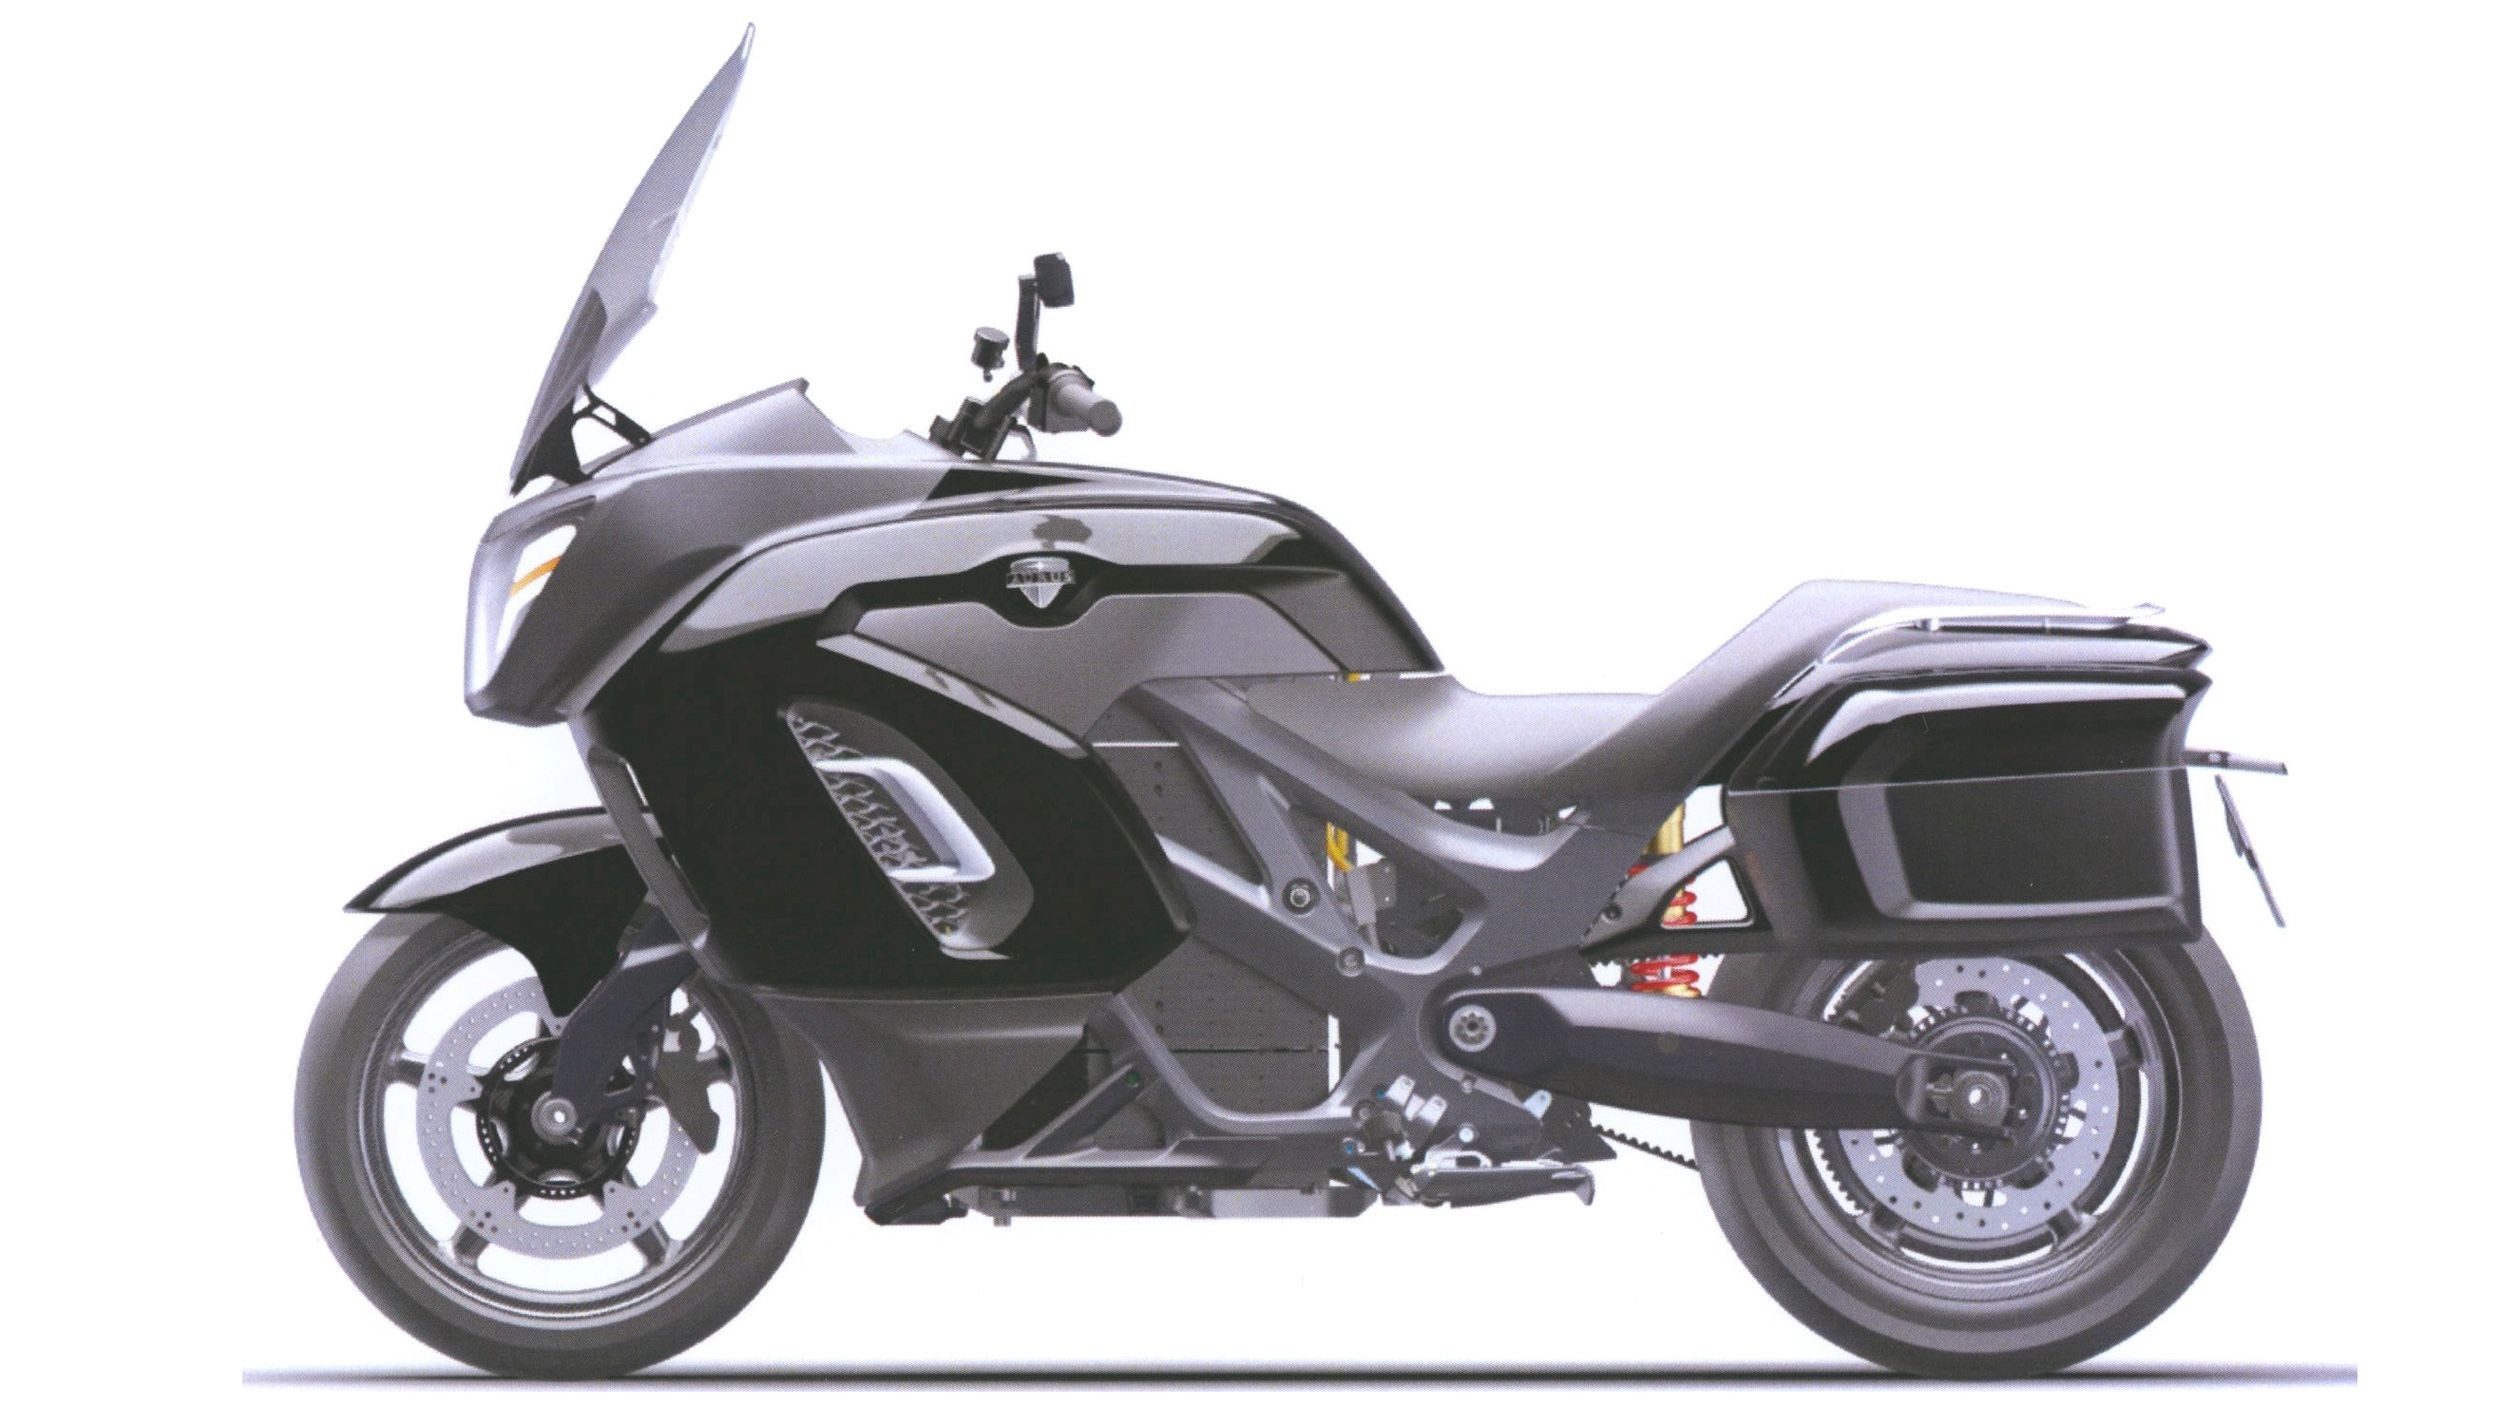 Патентные изображения мотоцикла Aurus: обычный турист вместо «ракеты Бэтмена»